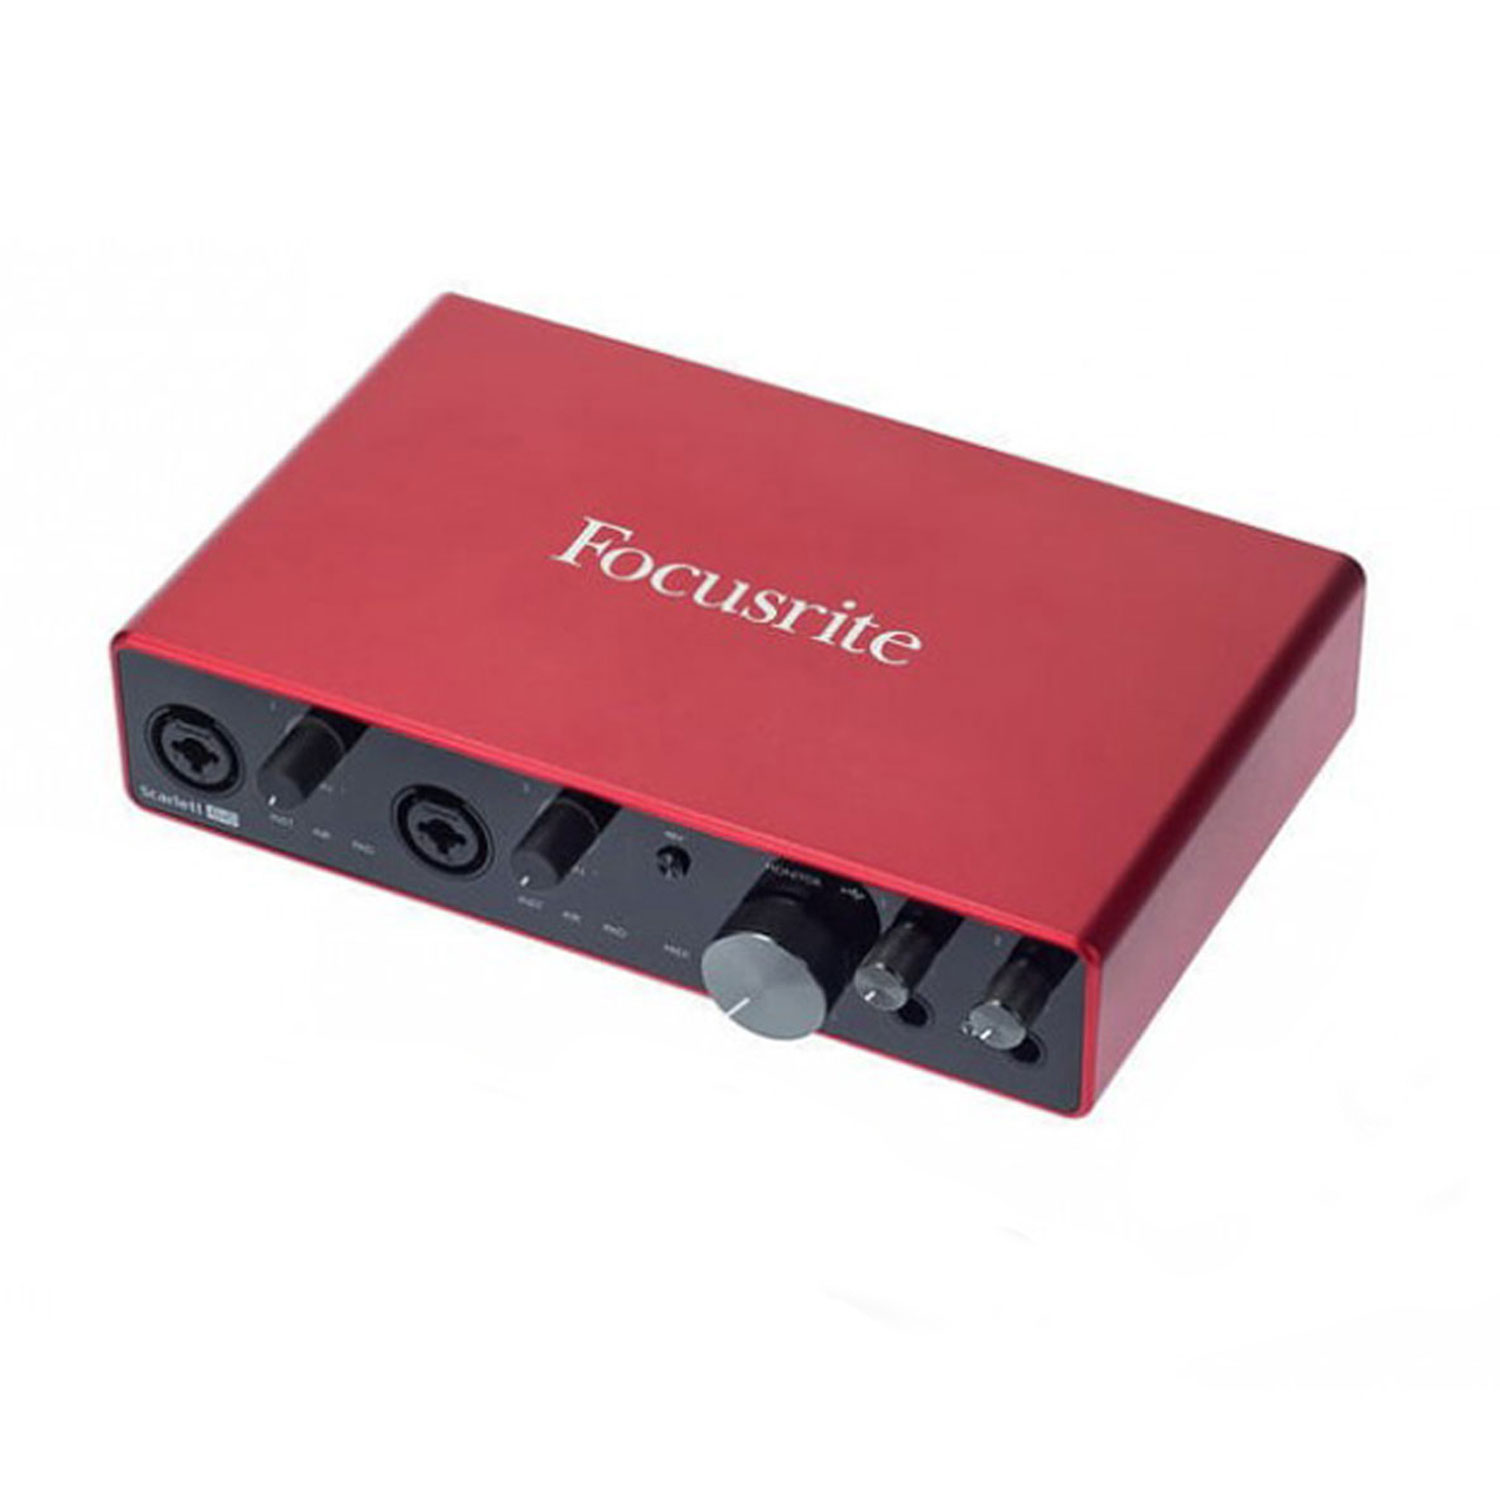 focusrite-scarlett-8i6-3rd-generation-interfaz-de-audio-usb